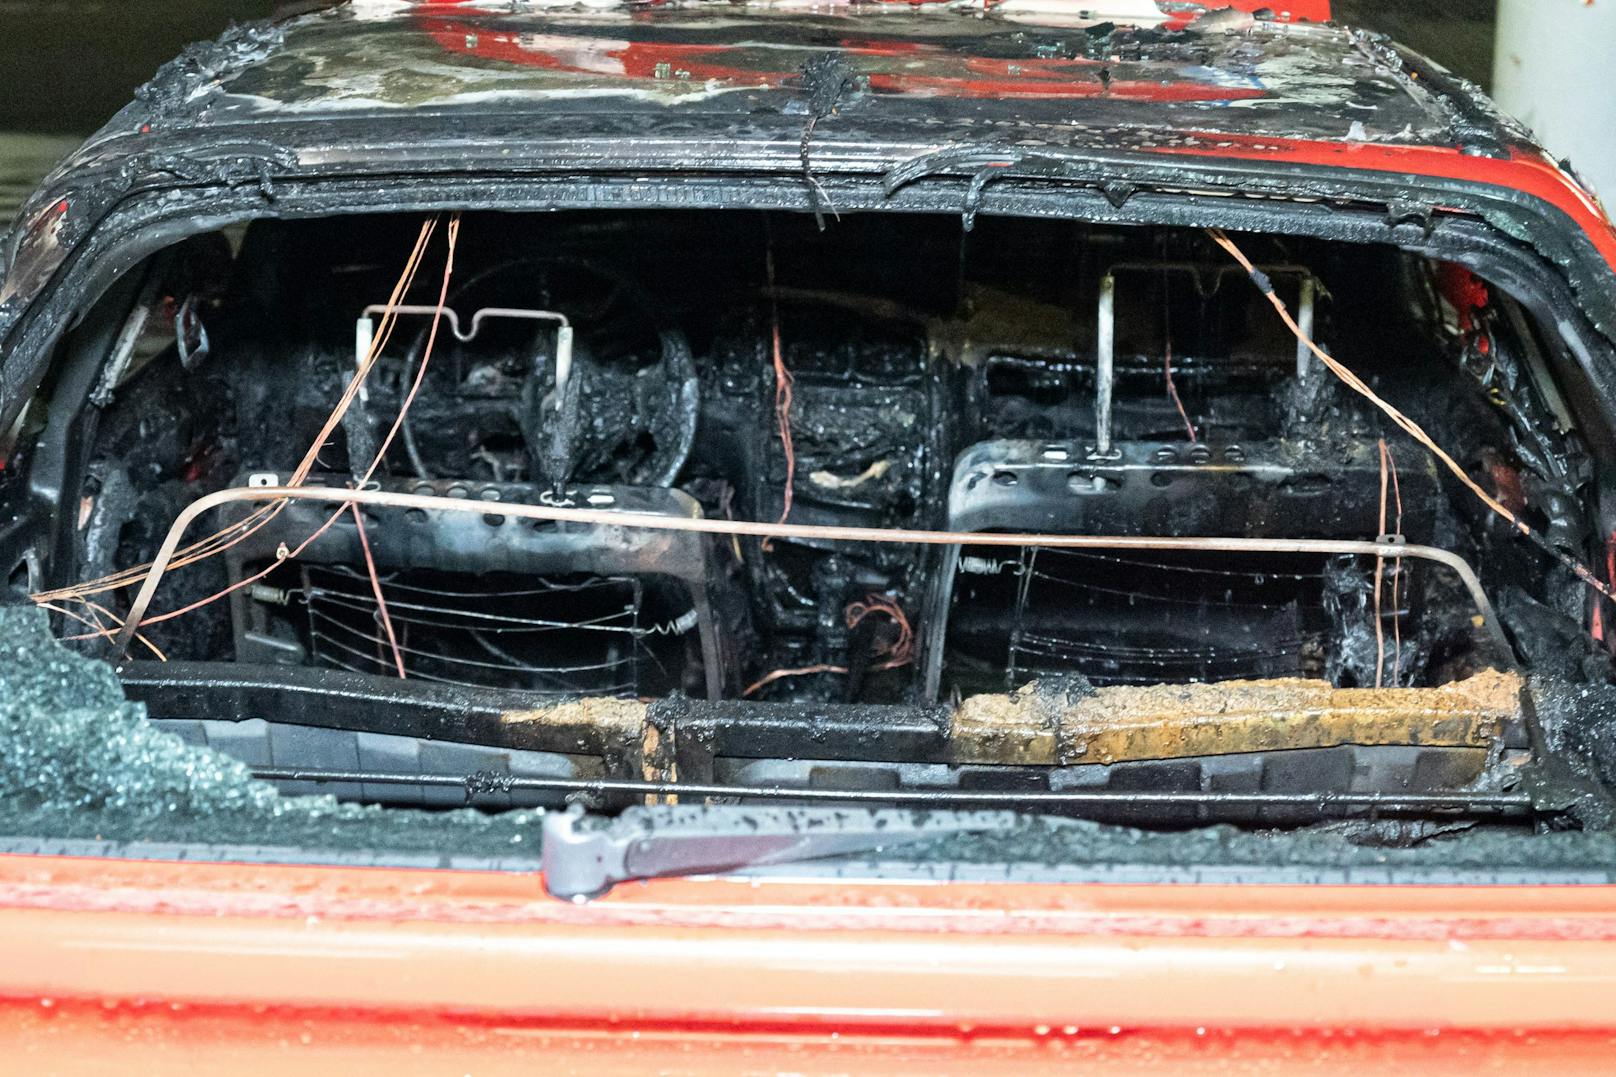 Die hintere Fensterscheibe des Autos war eingeschlagen worden. Dann wurde der Brand gelegt.